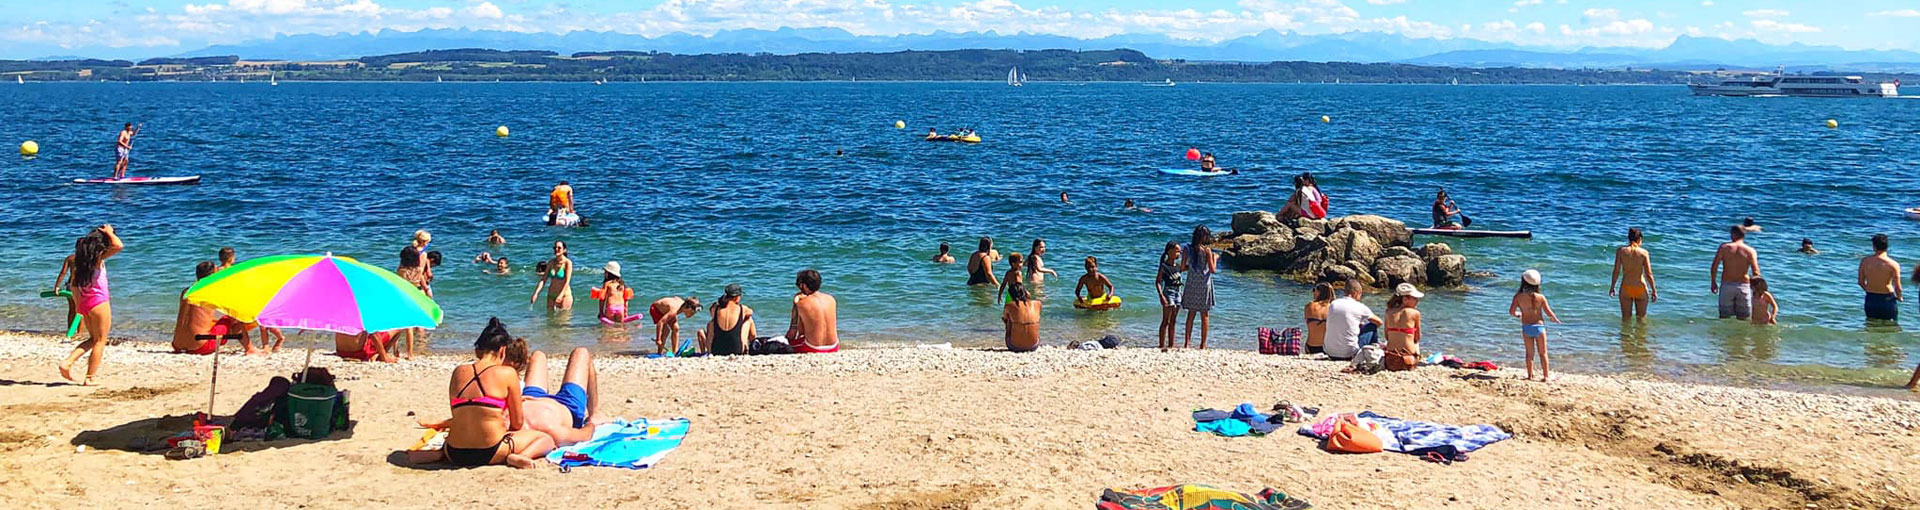 De nombreuses plages permettent de se baigner sur le territoire de Neuchâtel.